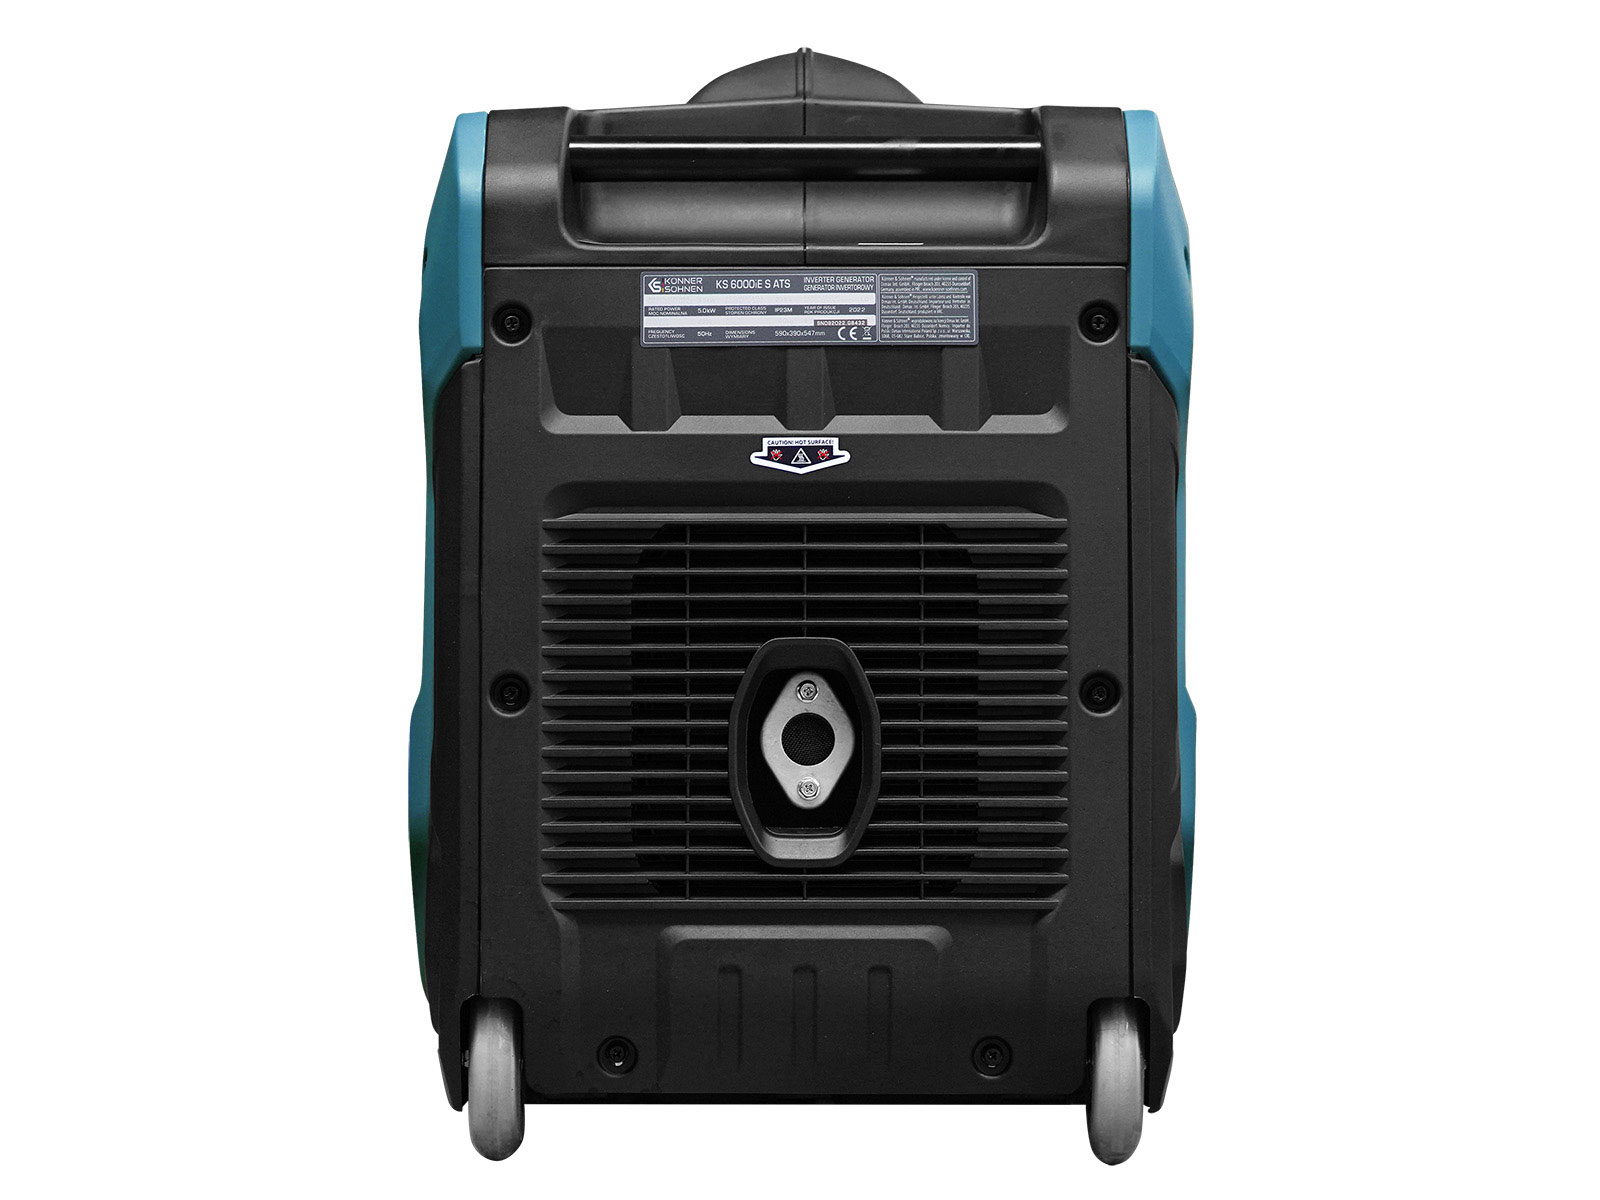 Inverter-Generator KS 6000iE S ATS Version 3